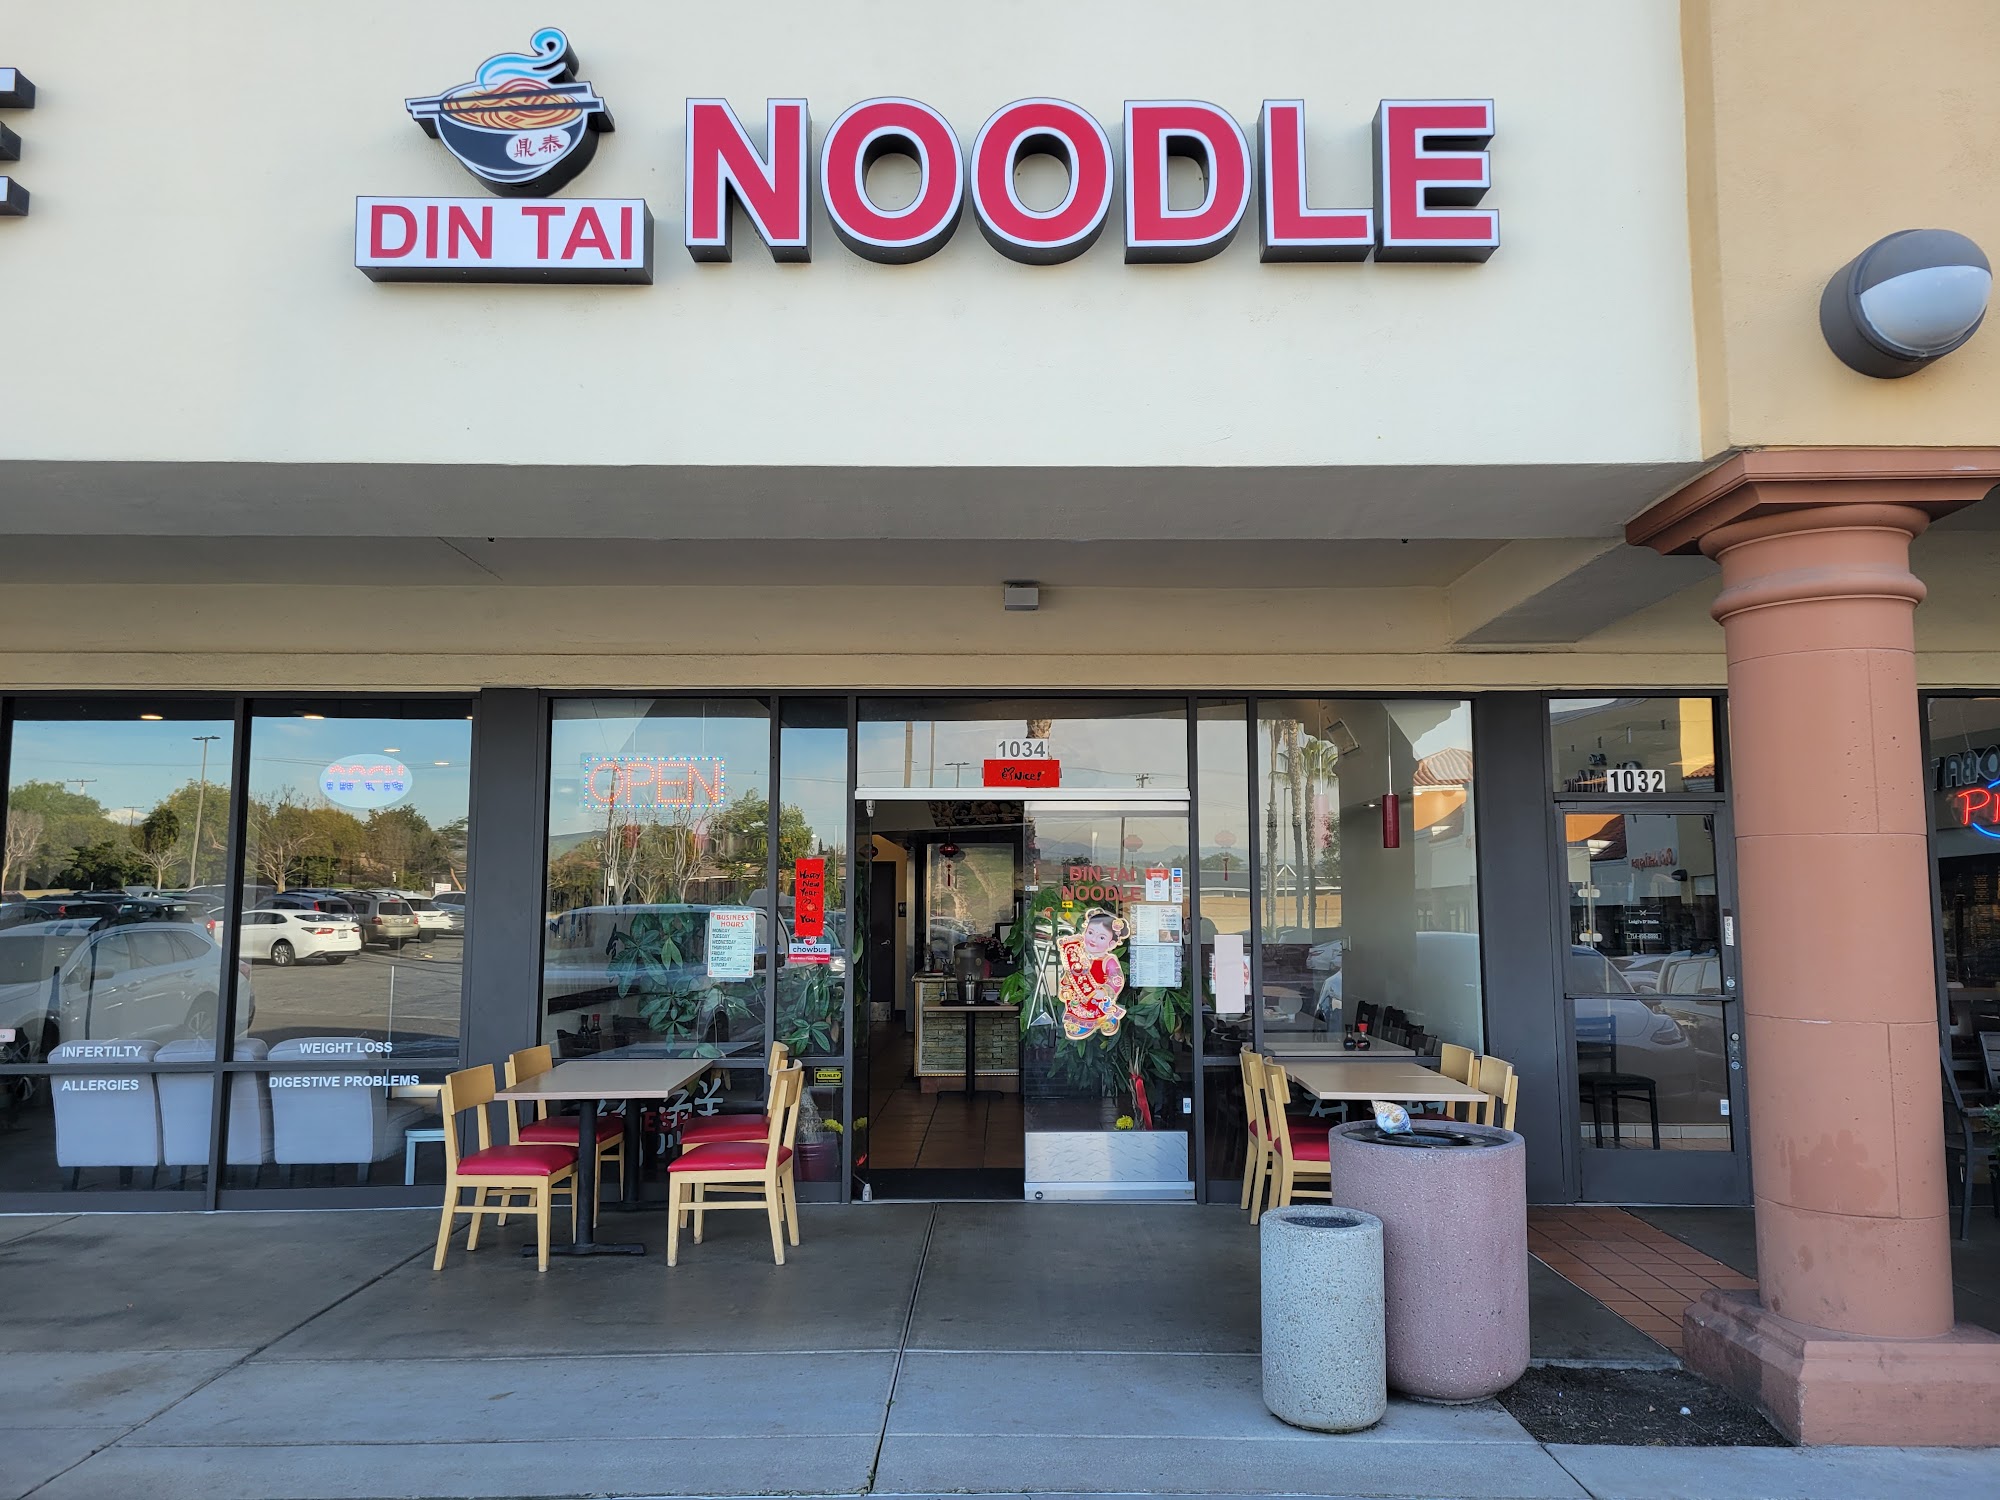 Din Tai Noodle